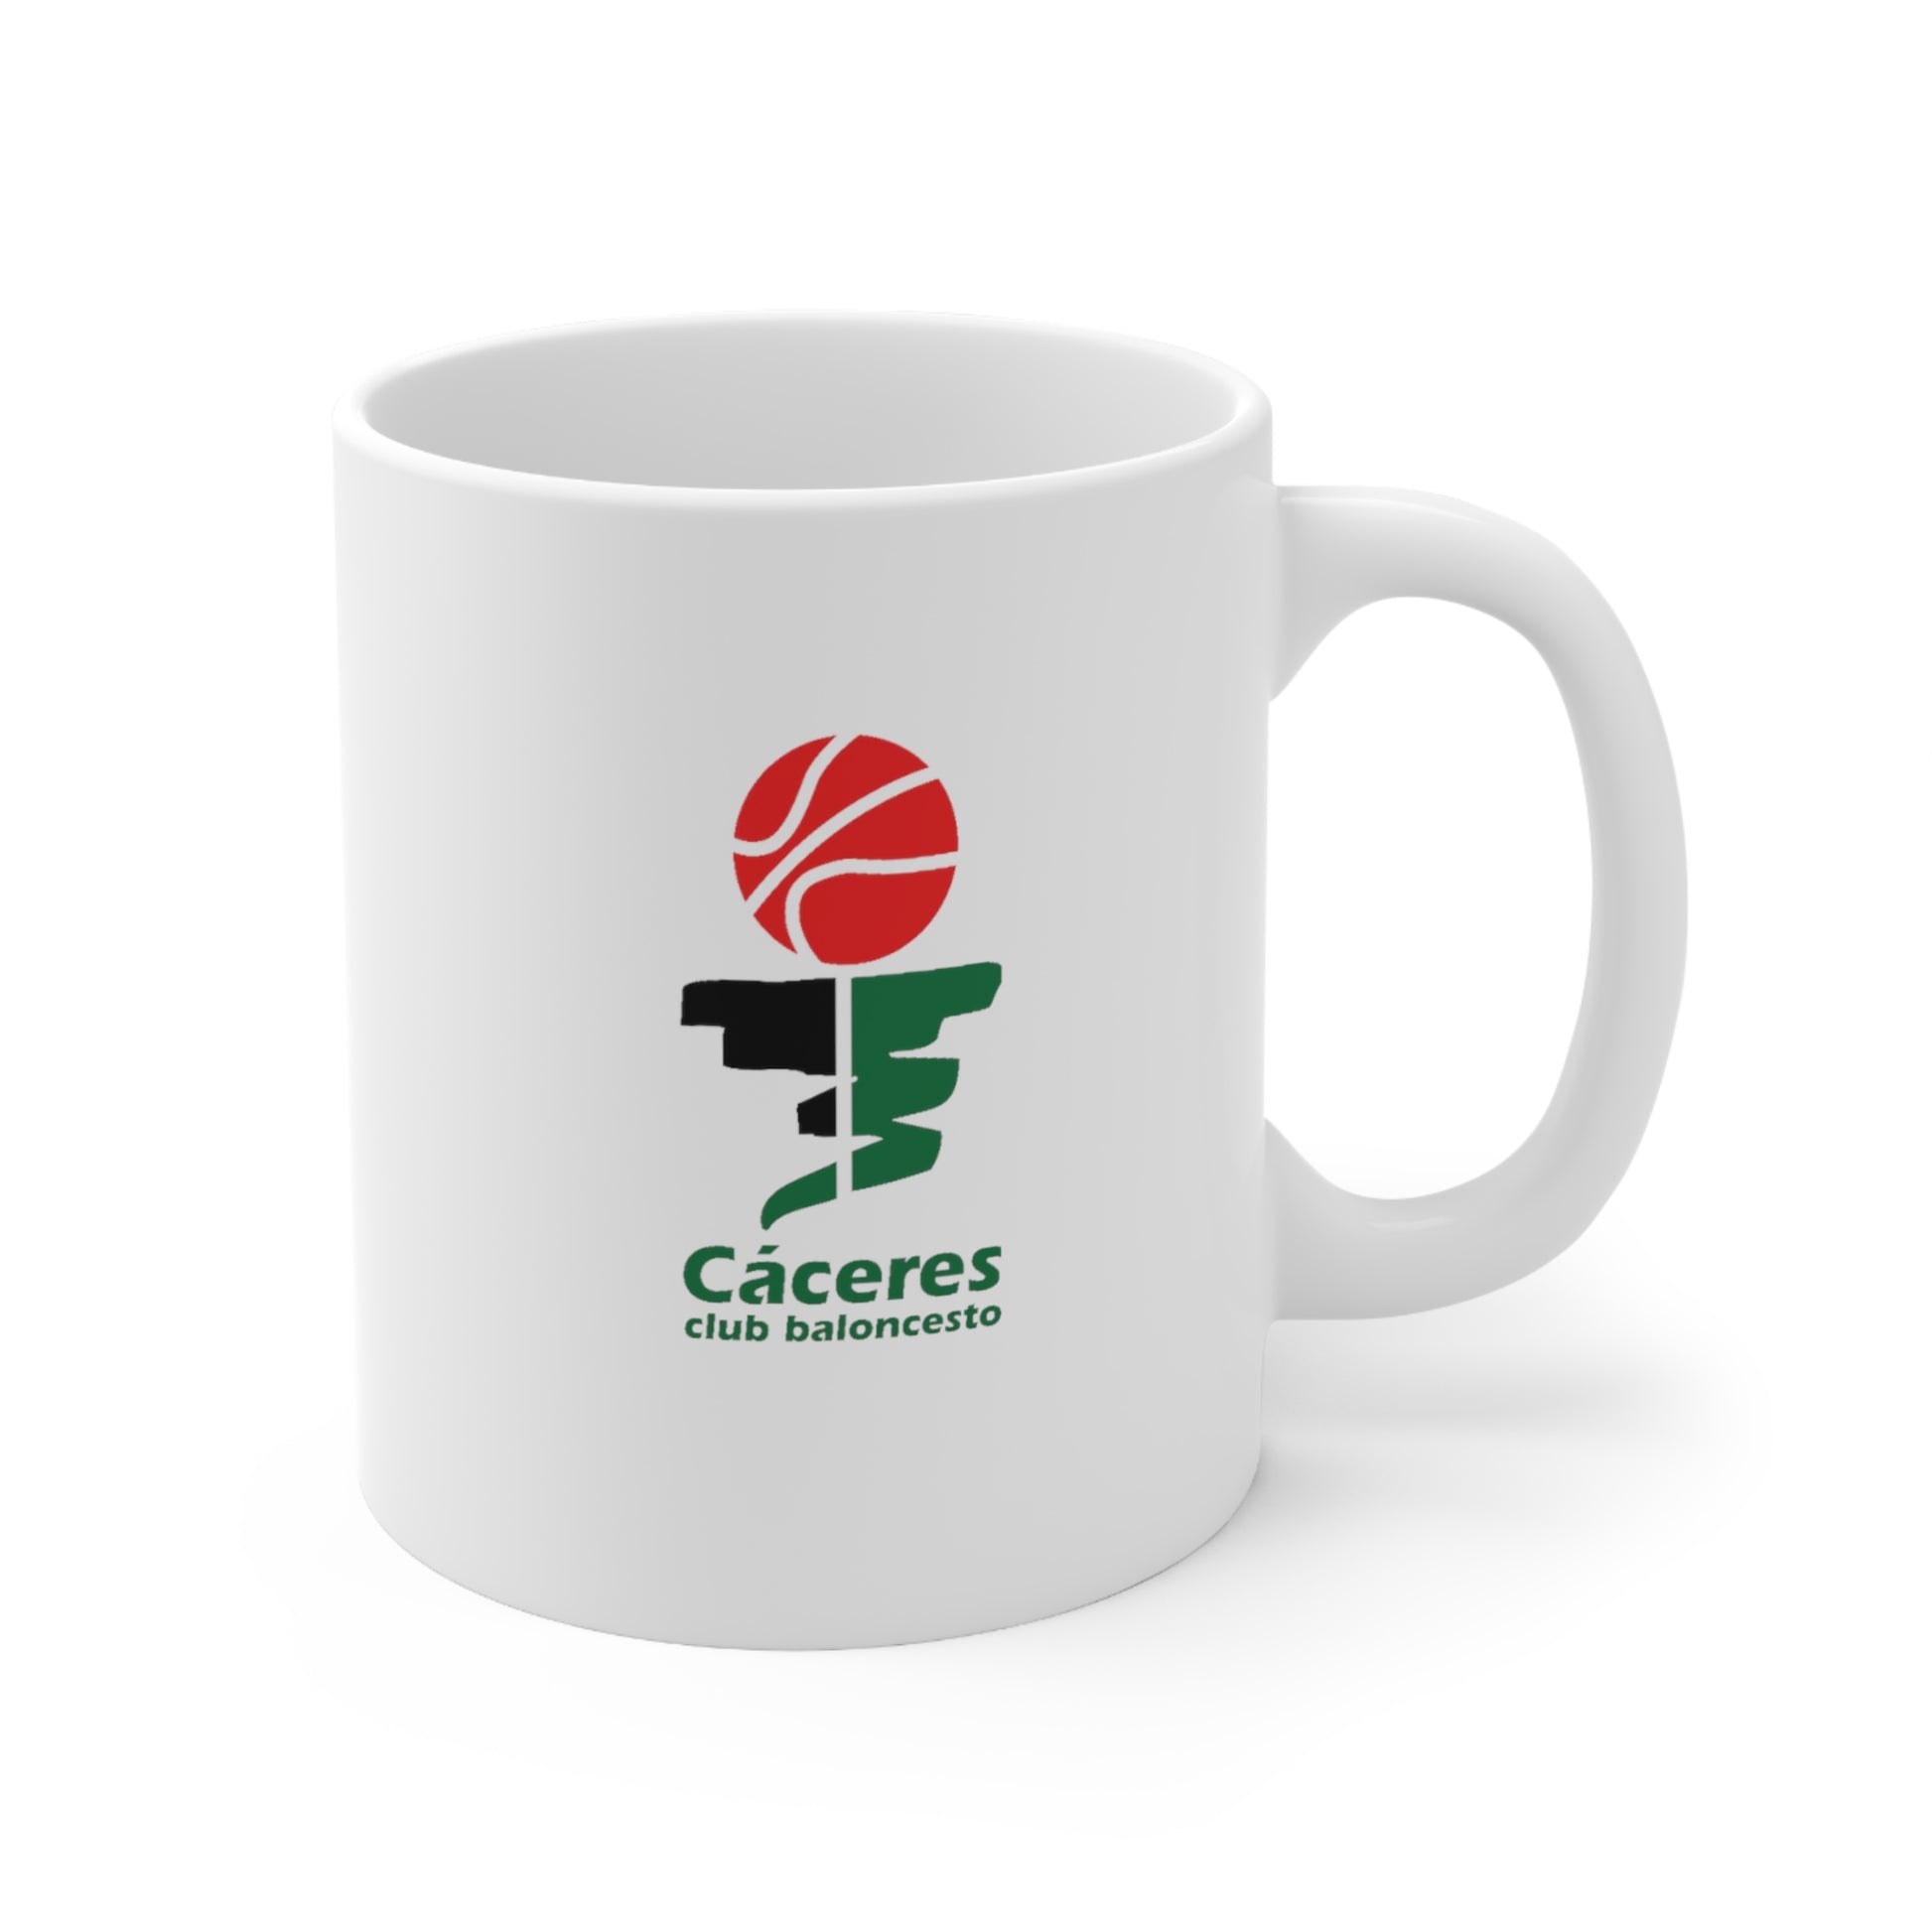 Basket Caceres (Caceres CB) Ceramic Mug